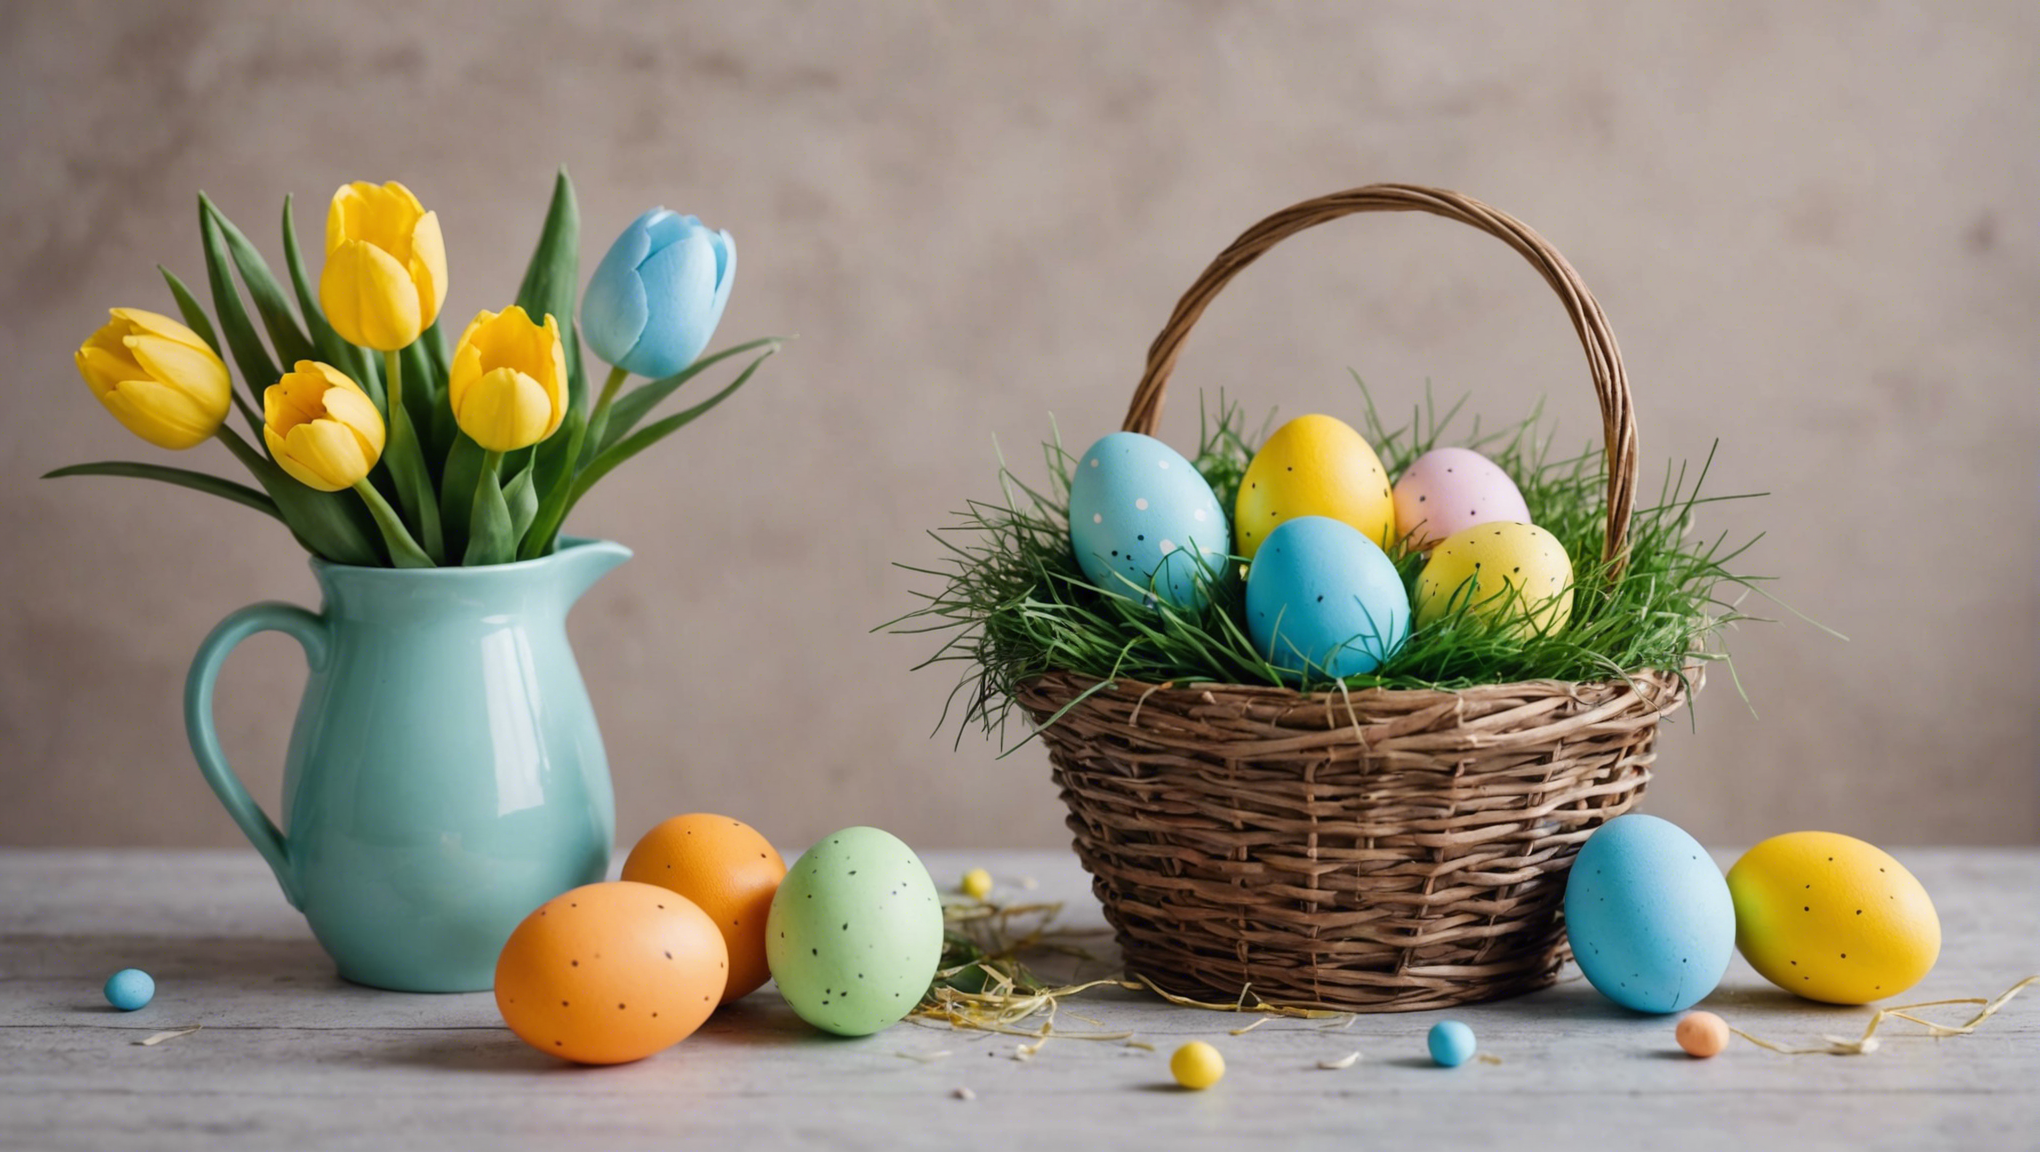 découvrez comment réaliser une magnifique décoration de pâques avec nos idées diy faciles à mettre en œuvre. embellissez votre intérieur pour les fêtes de pâques avec créativité et originalité.